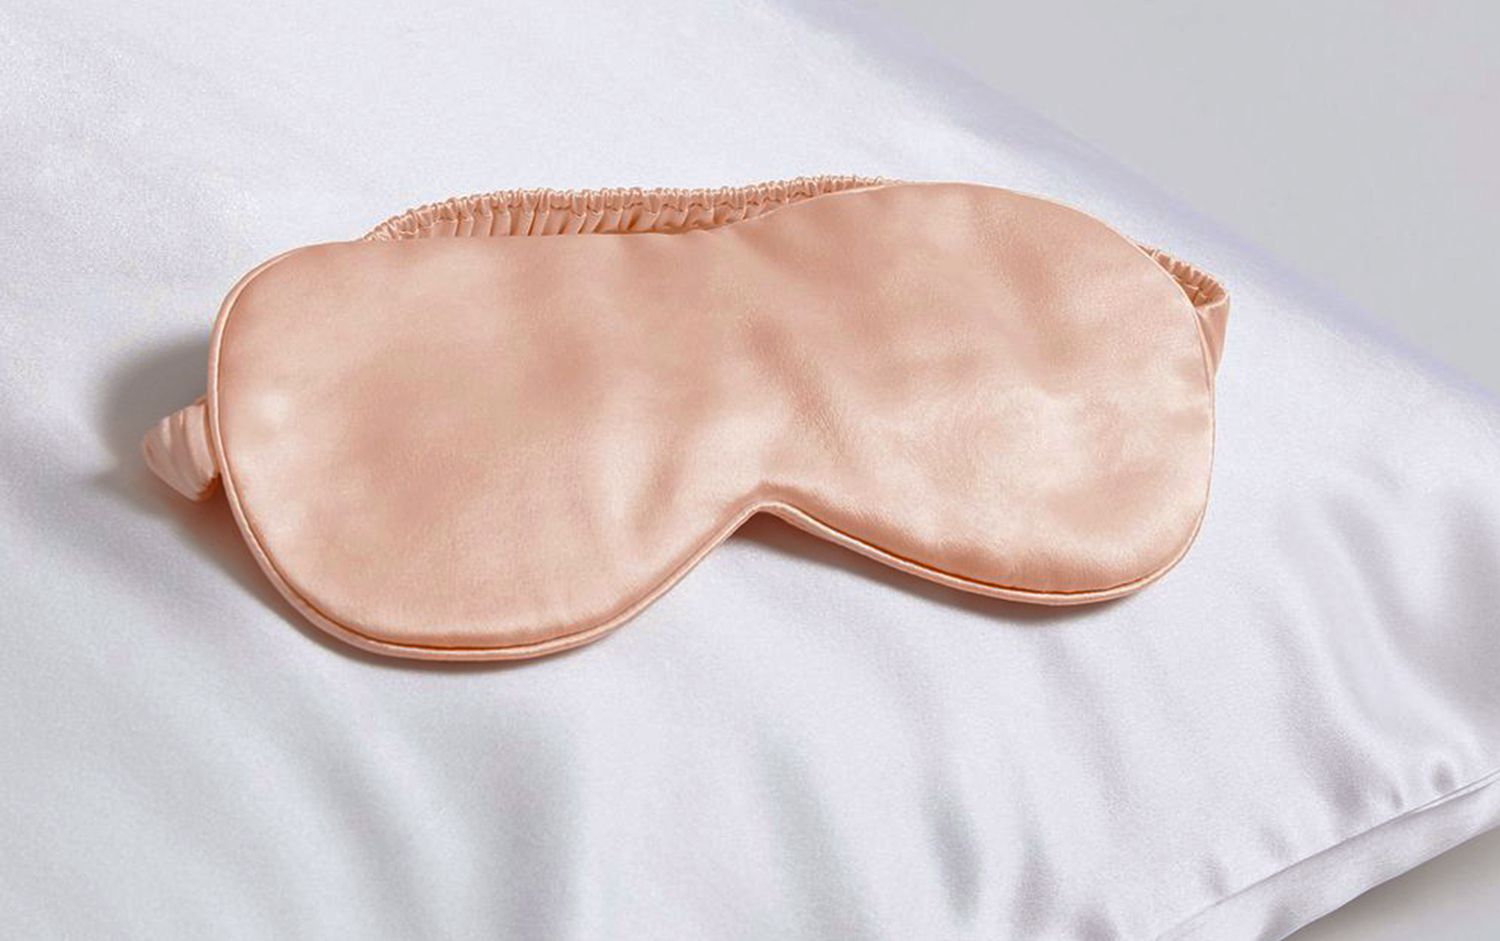 Brooklinen silk pink eyemask on a pillow